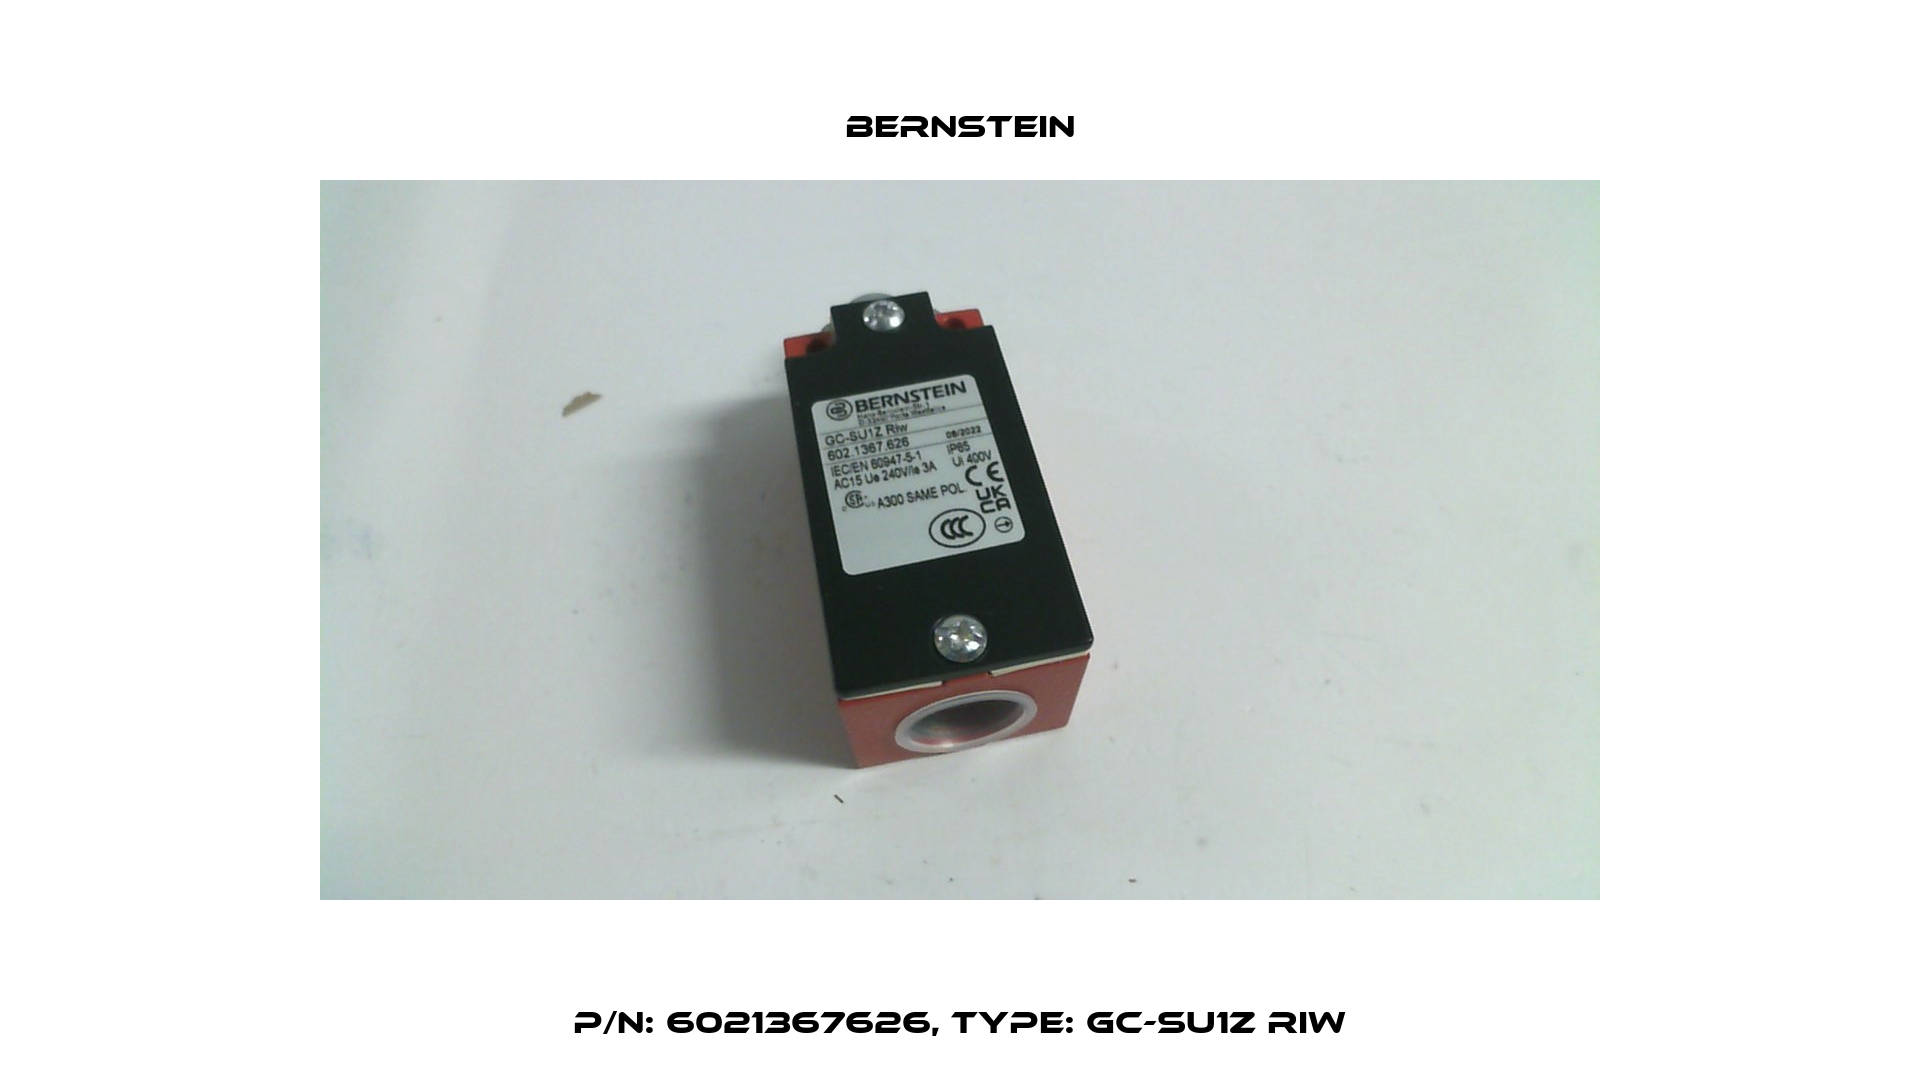 P/N: 6021367626, Type: GC-SU1Z RIW Bernstein